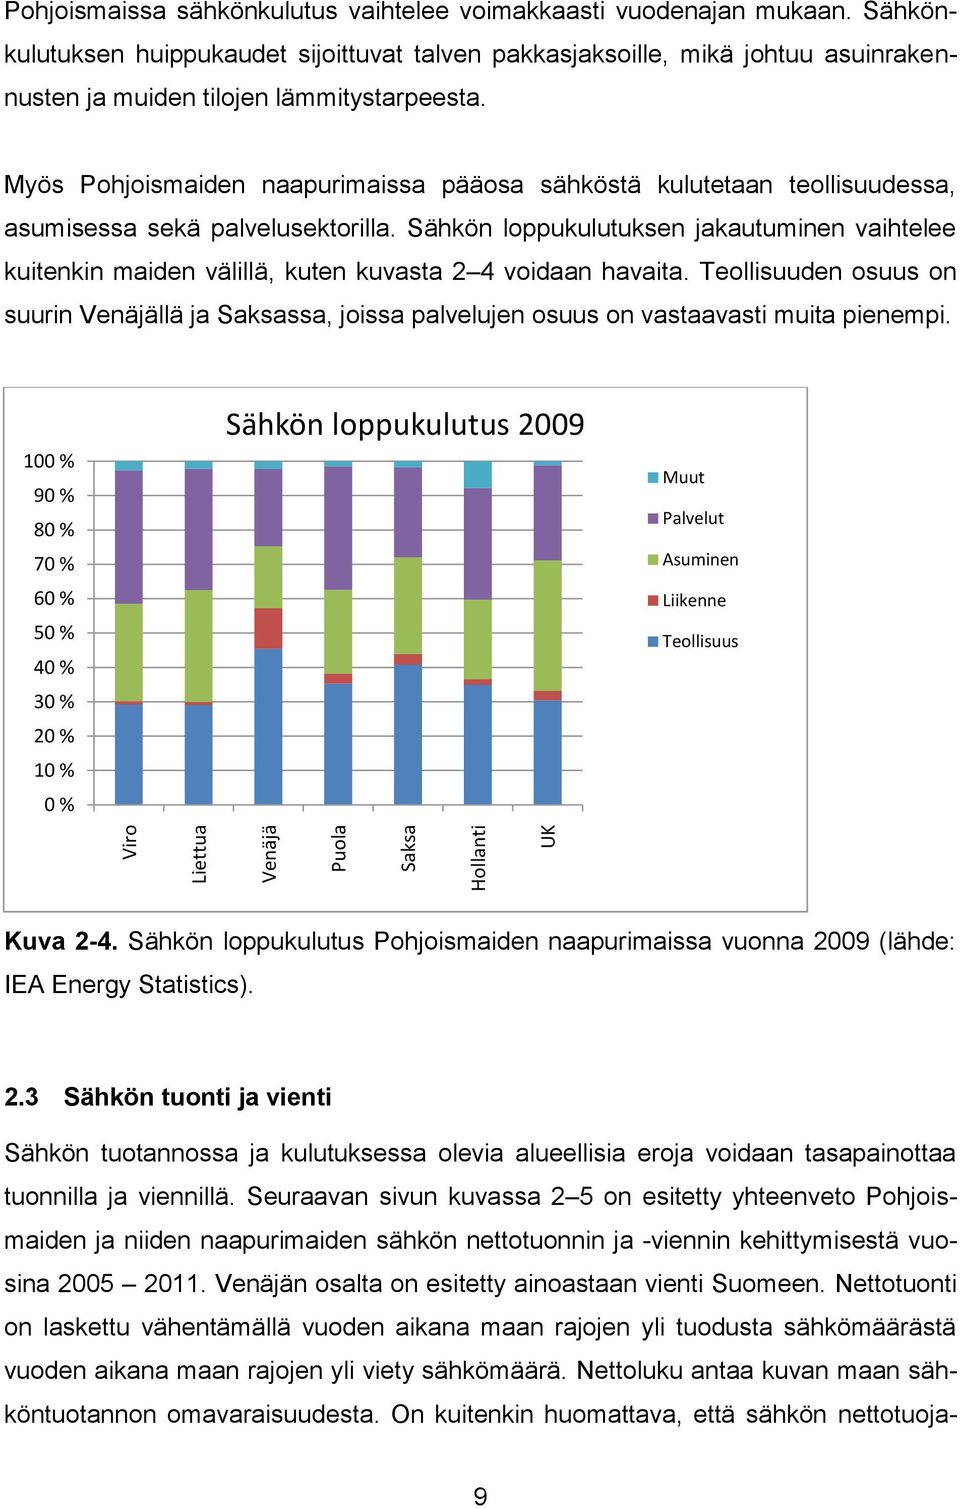 Myös Pohjoismaiden naapurimaissa pääosa sähköstä kulutetaan teollisuudessa, asumisessa sekä palvelusektorilla.